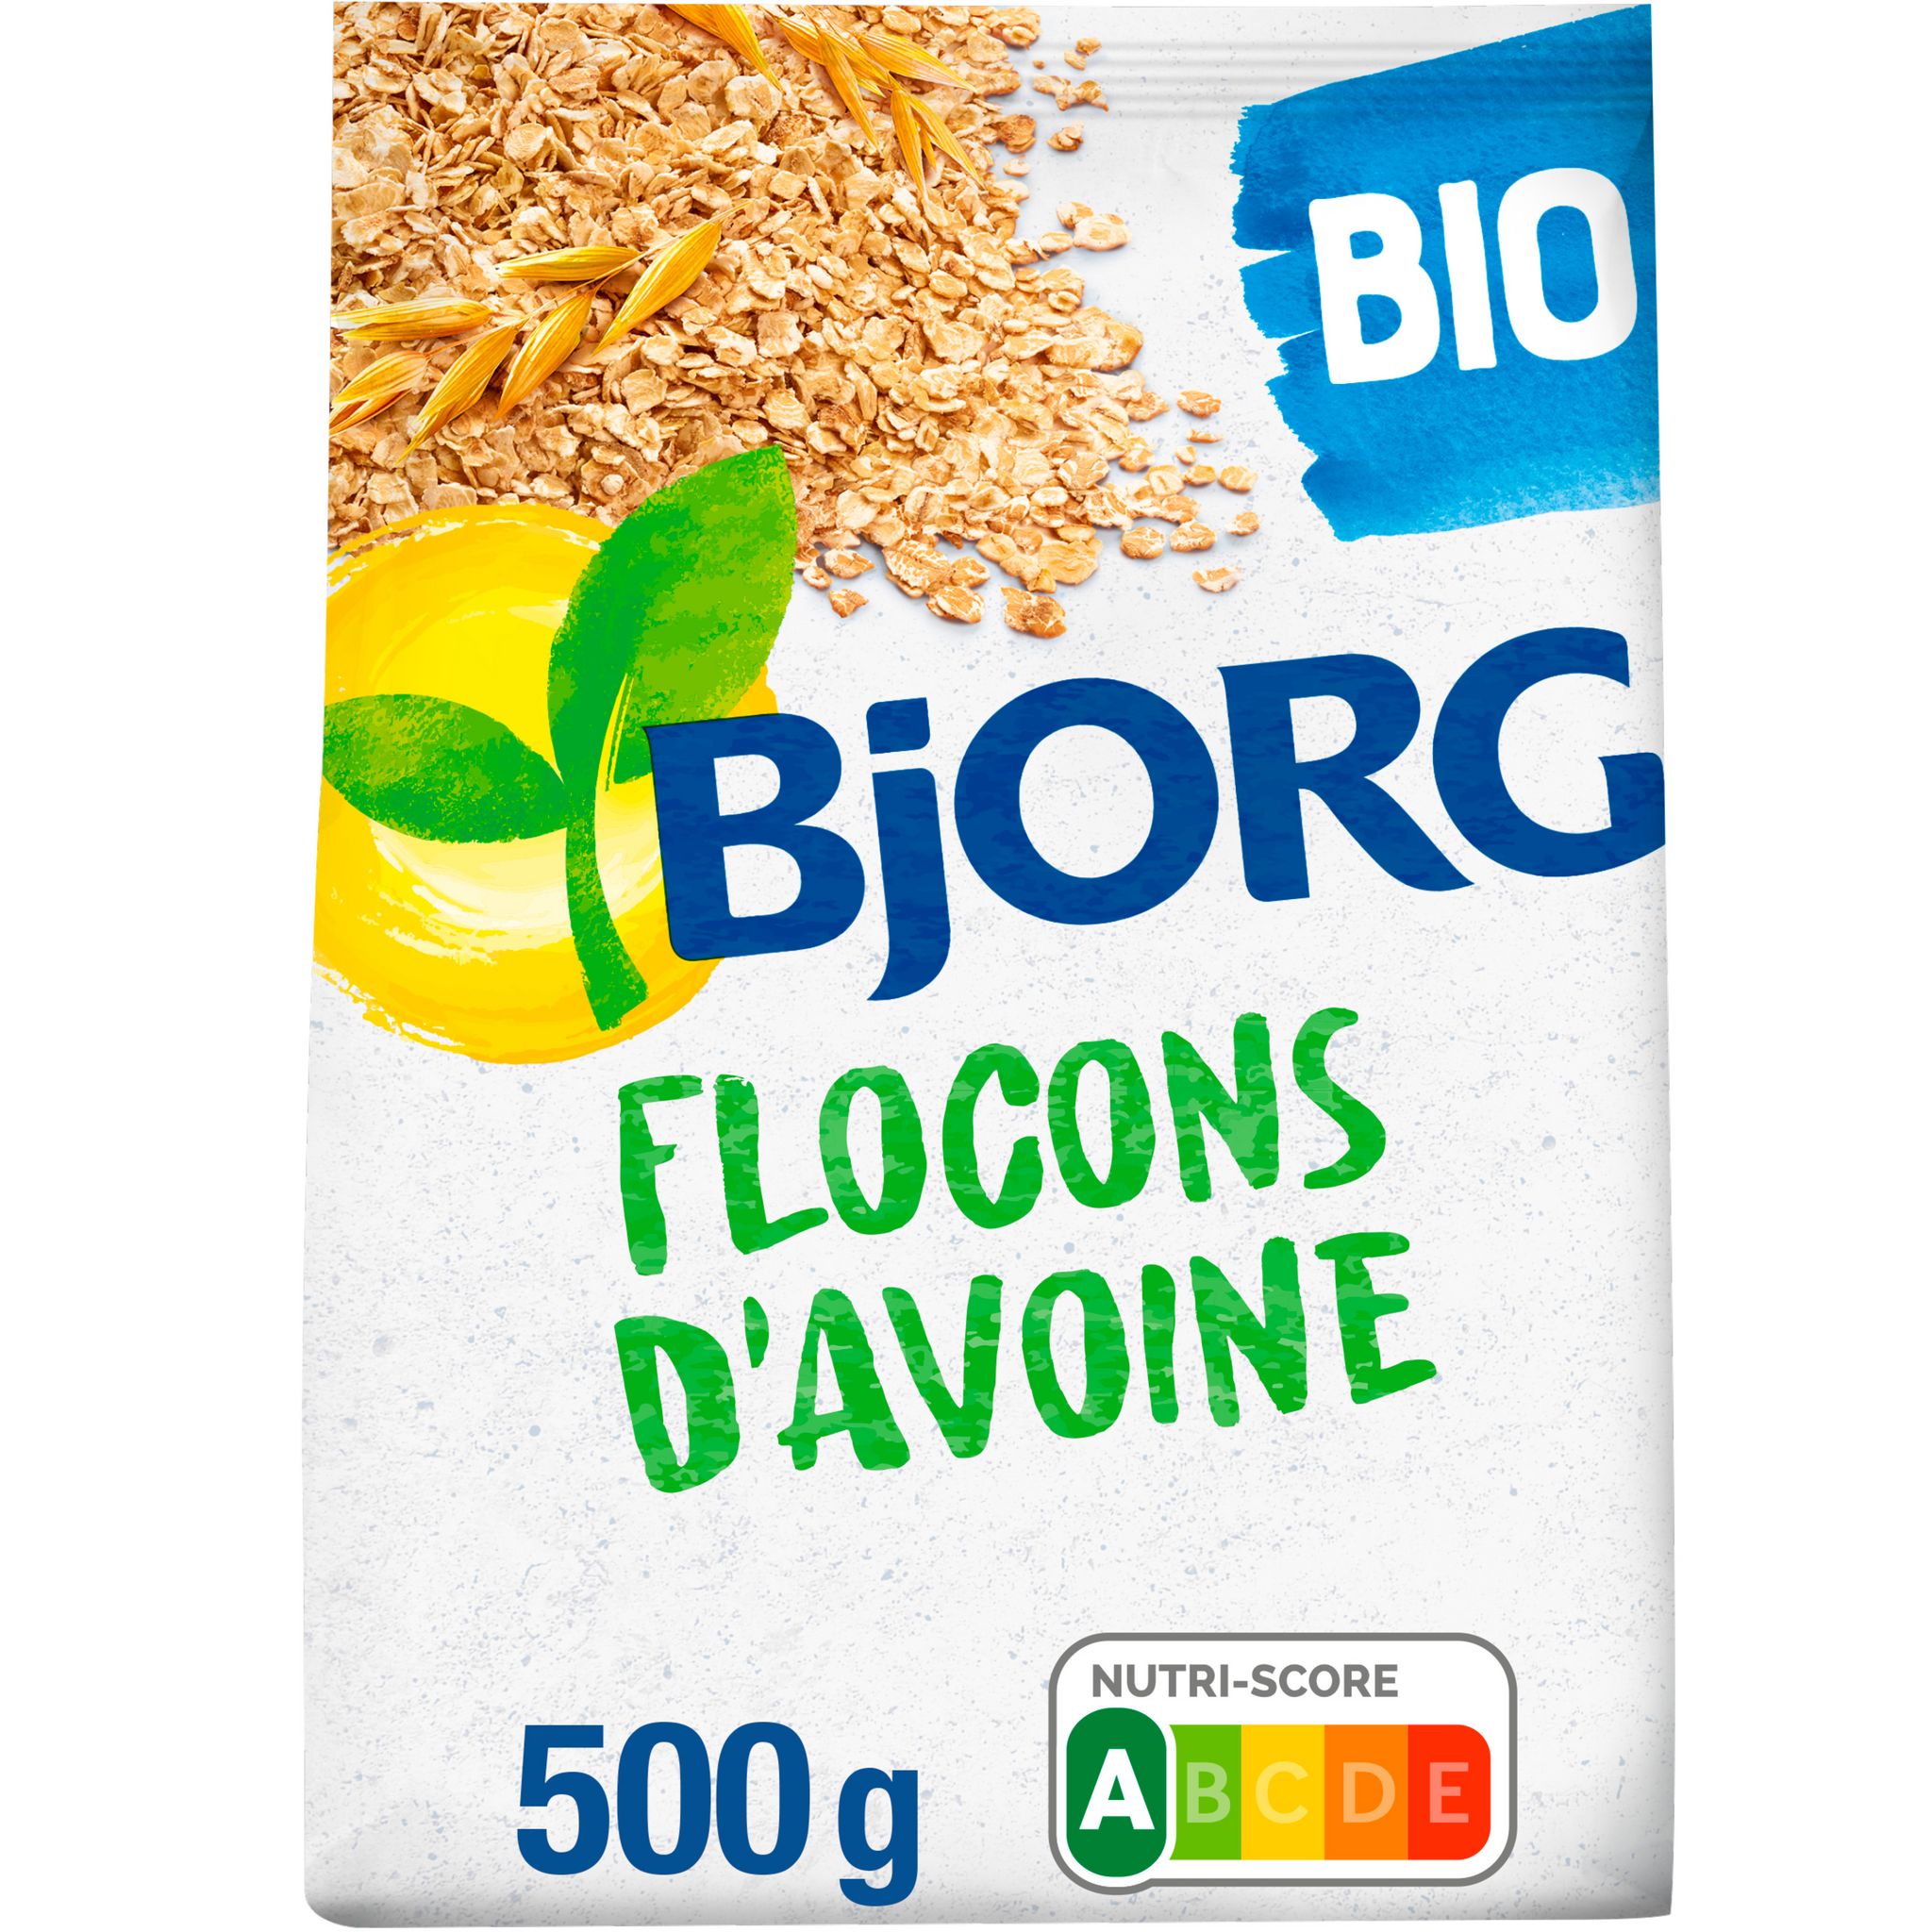 Porridge petit-déjeuner 3 céréales bio - Bjorg